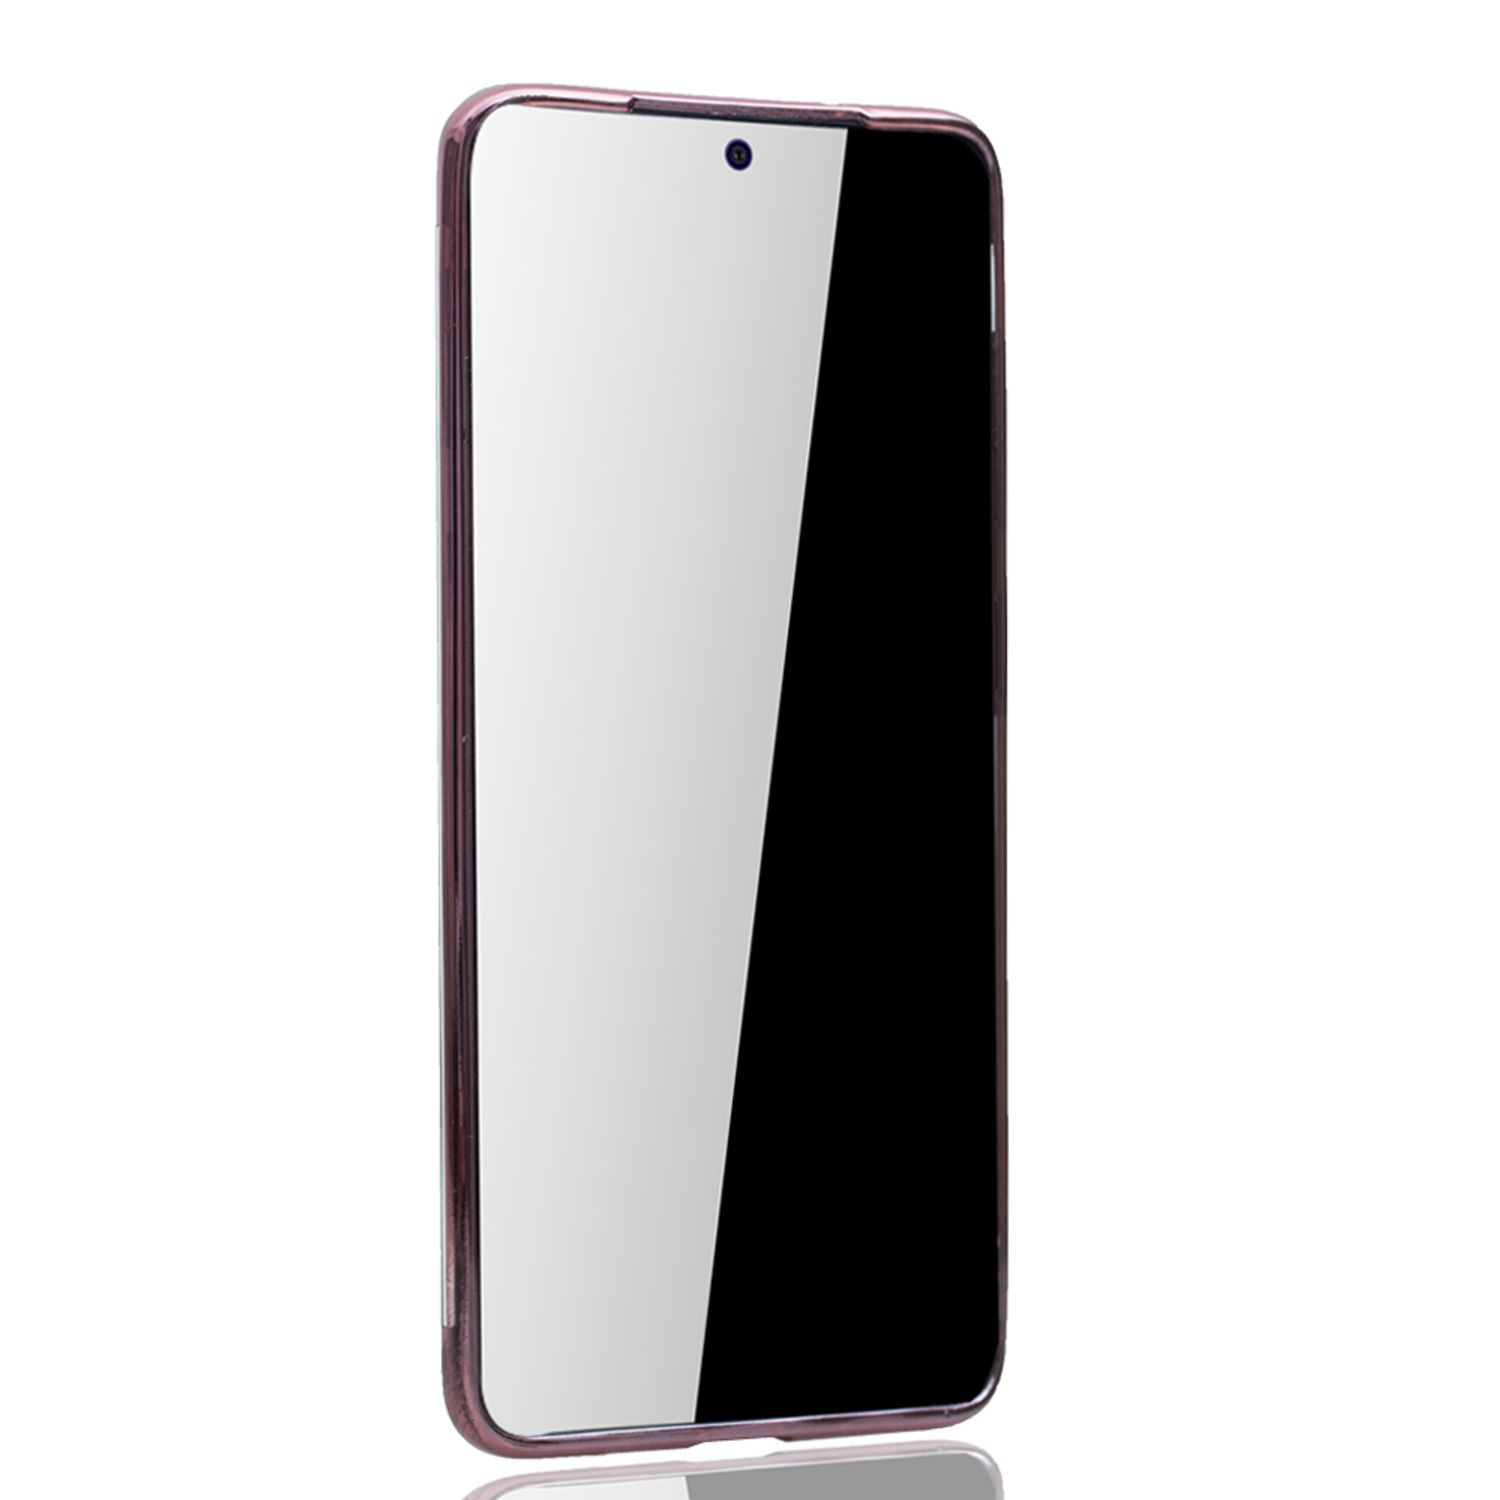 S20 Backcover, Pink DESIGN Samsung, Schutzhülle, KÖNIG Ultra, Galaxy